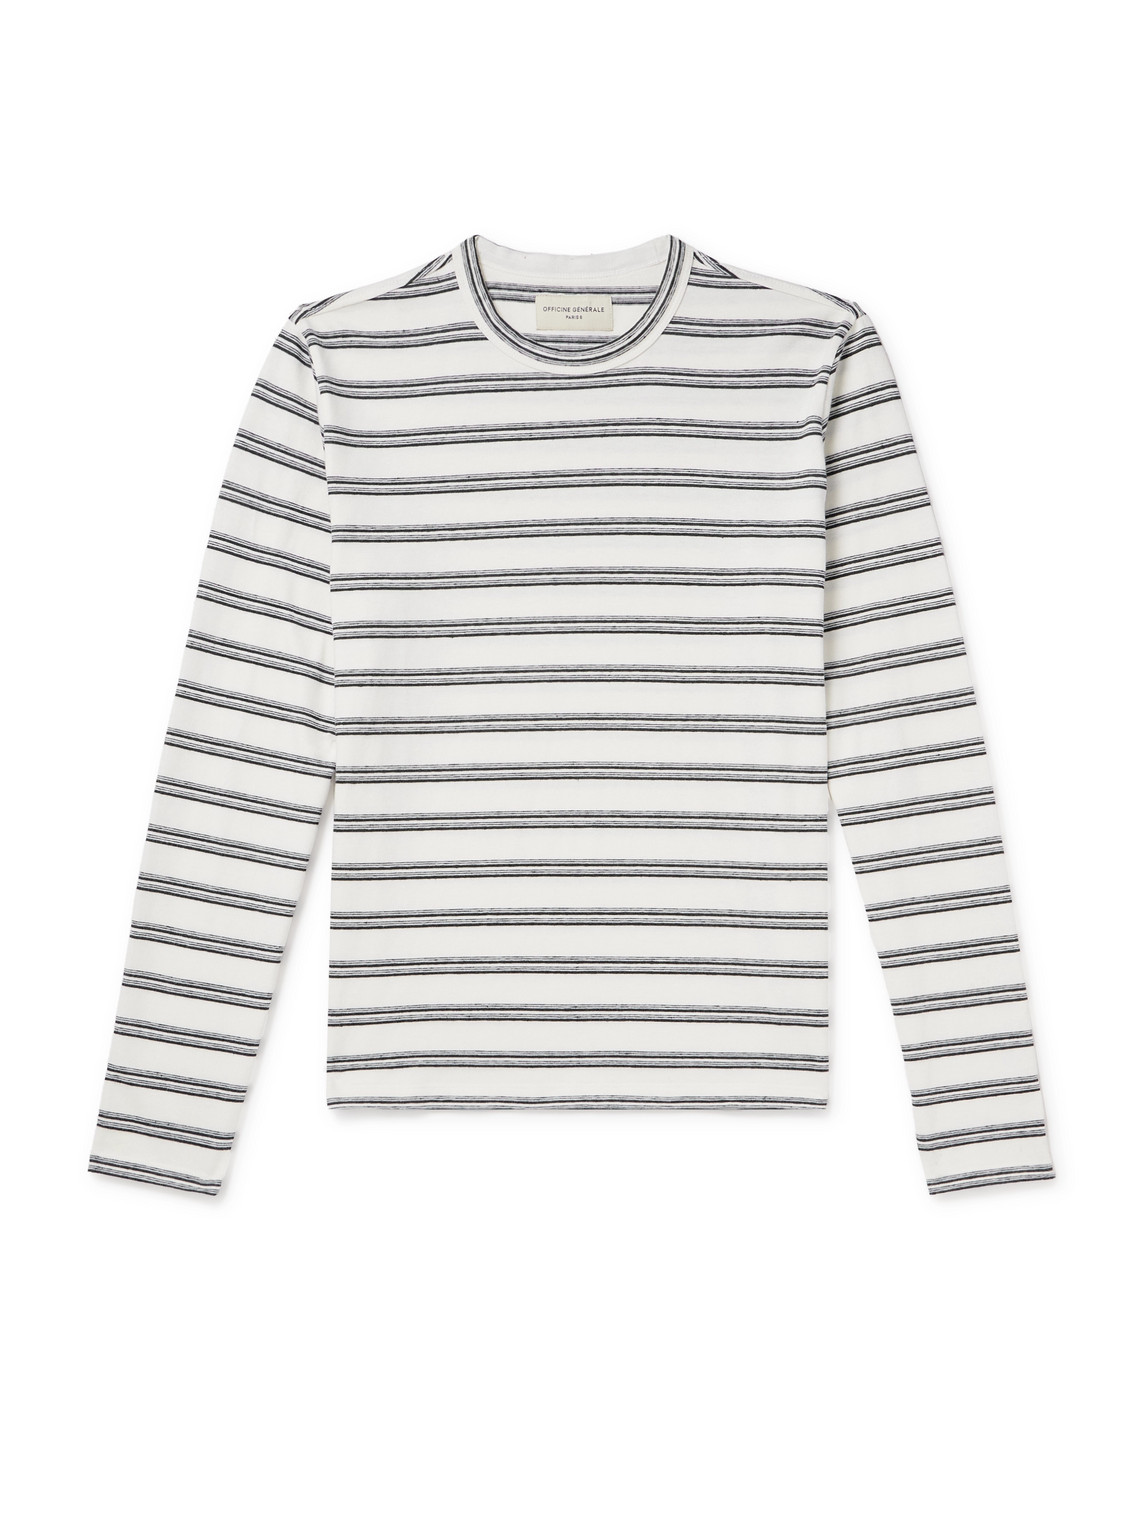 Officine Générale - Striped Cotton and Linen-Blend T-Shirt - Men - Multi - XXL von Officine Générale